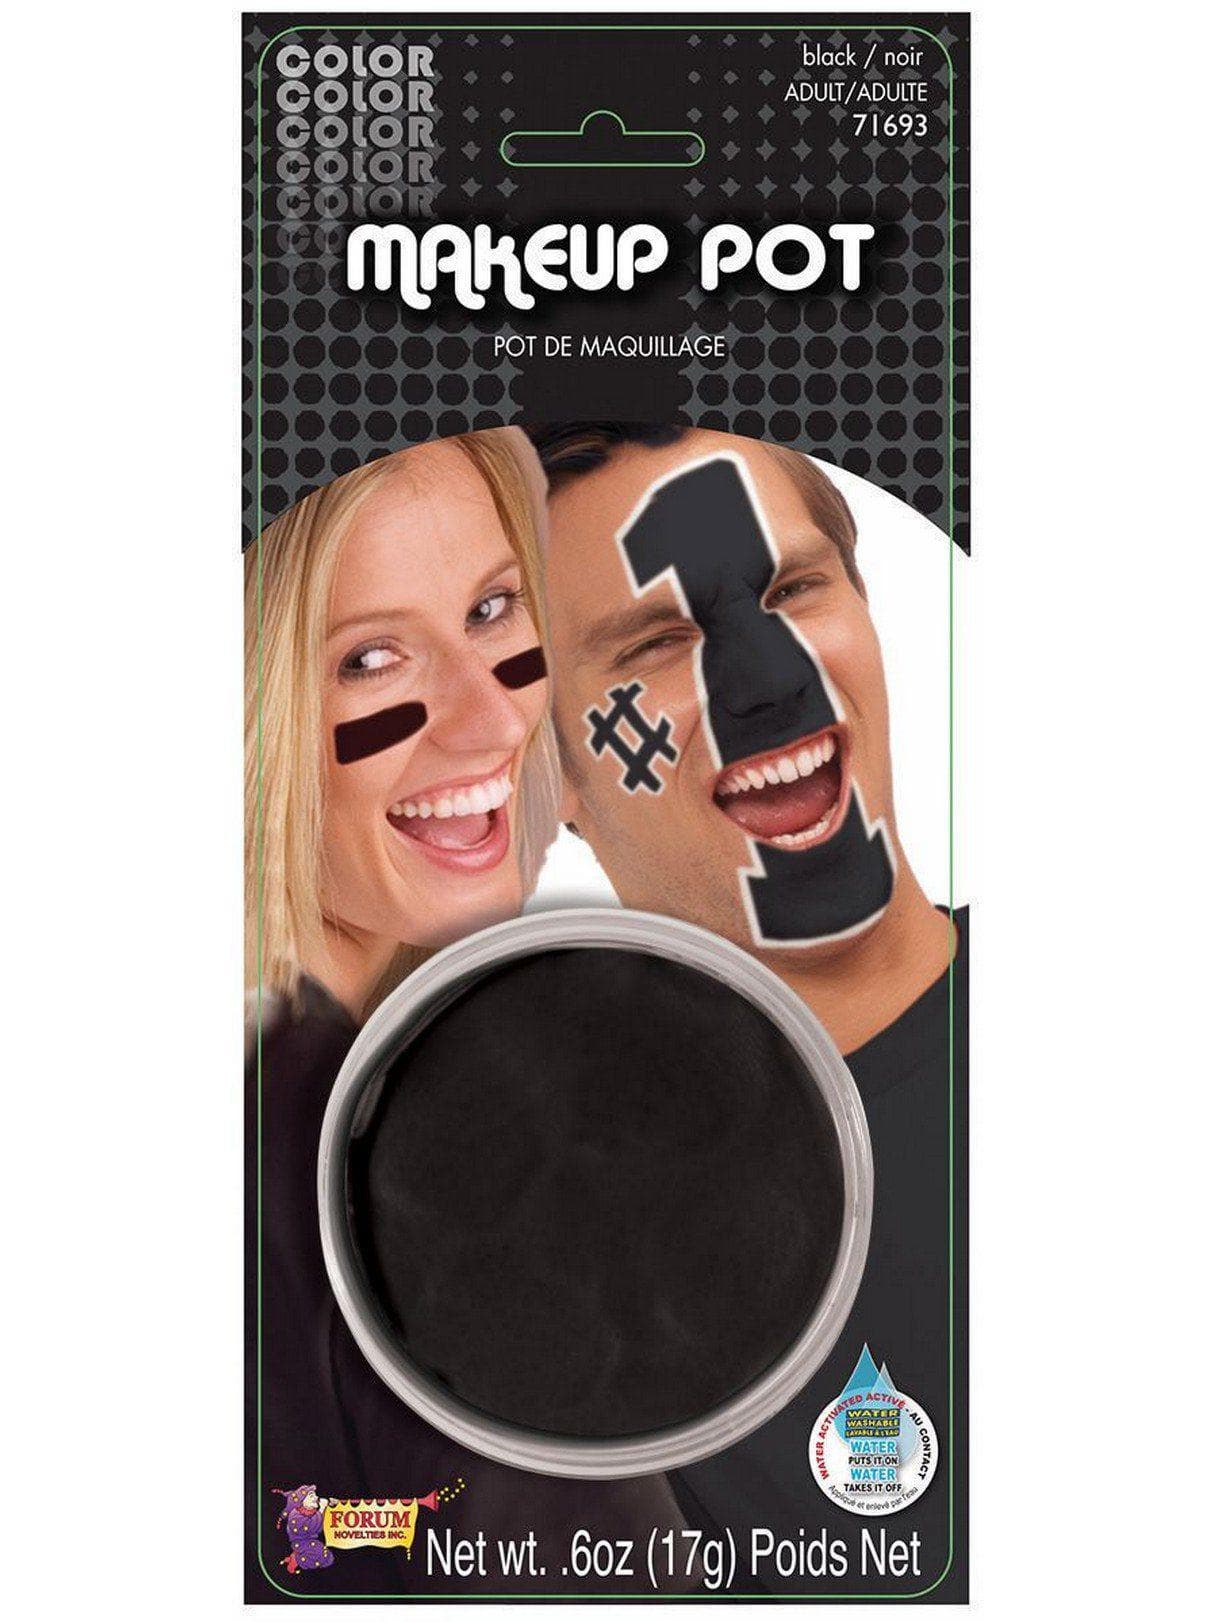 Black Face Makeup Paint Pot - costumes.com